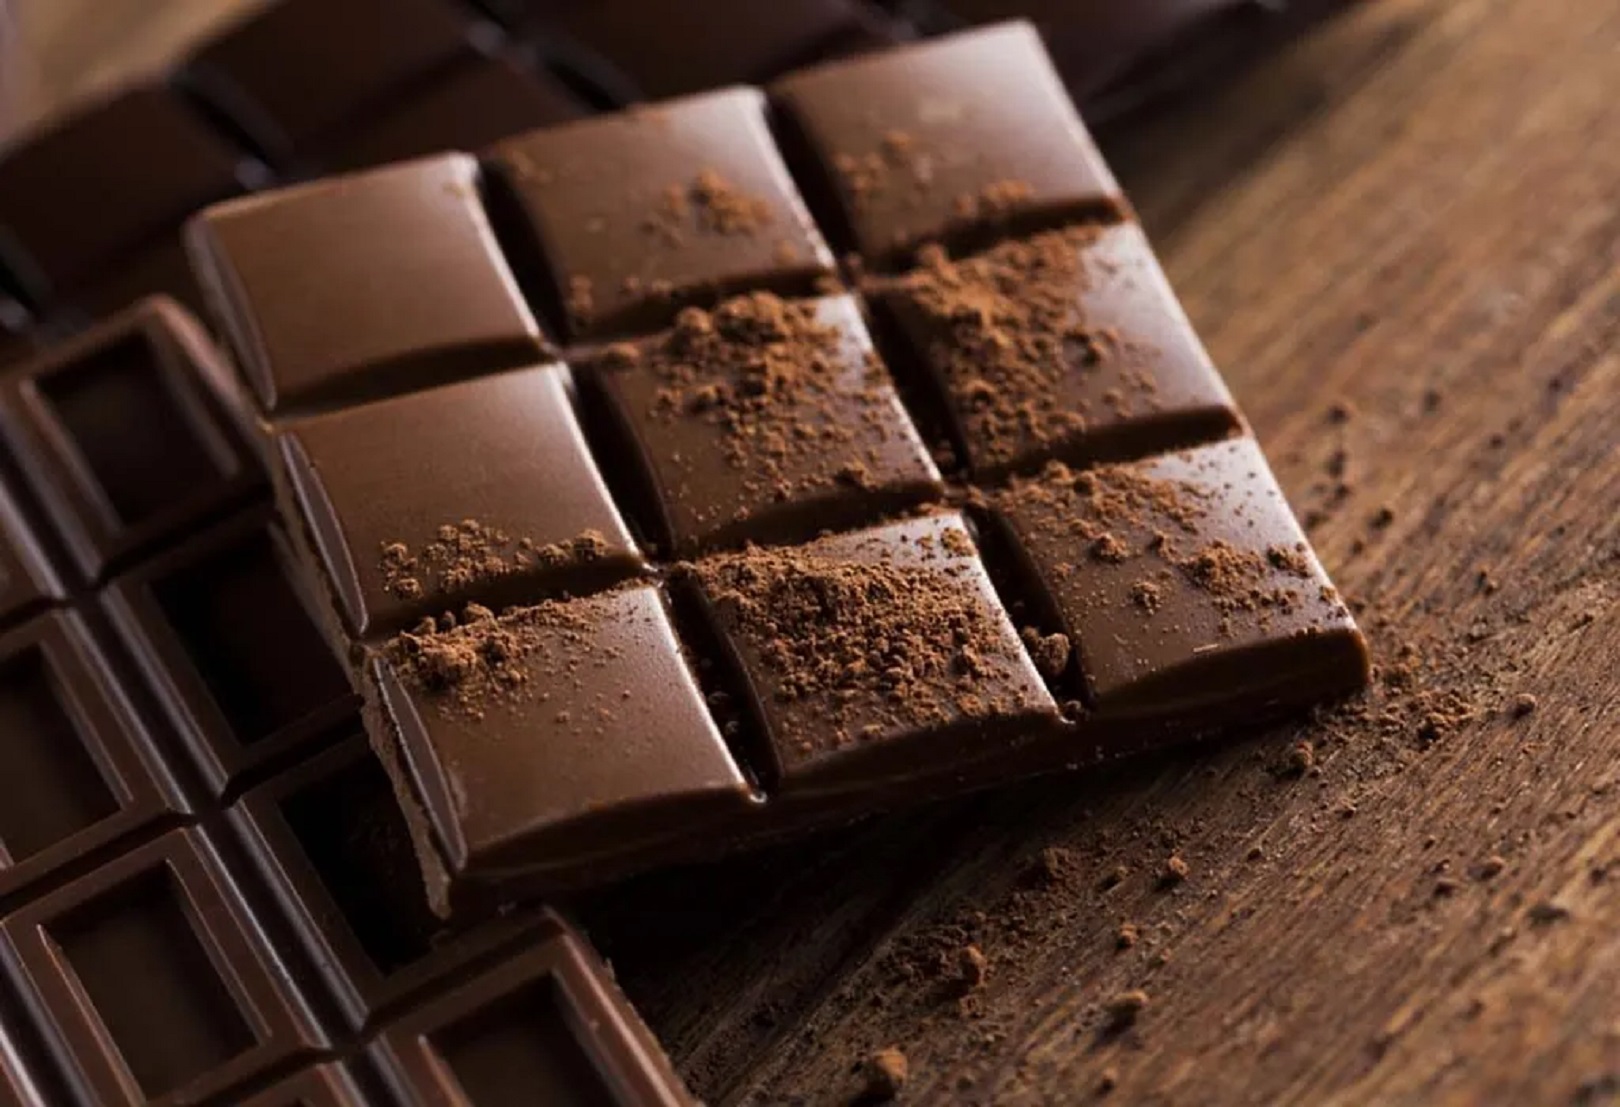 Manfaat Dibalik Kenikmatan Dark Chocolate Bagi Ibu Hamil, Yuk Cari Tahu!